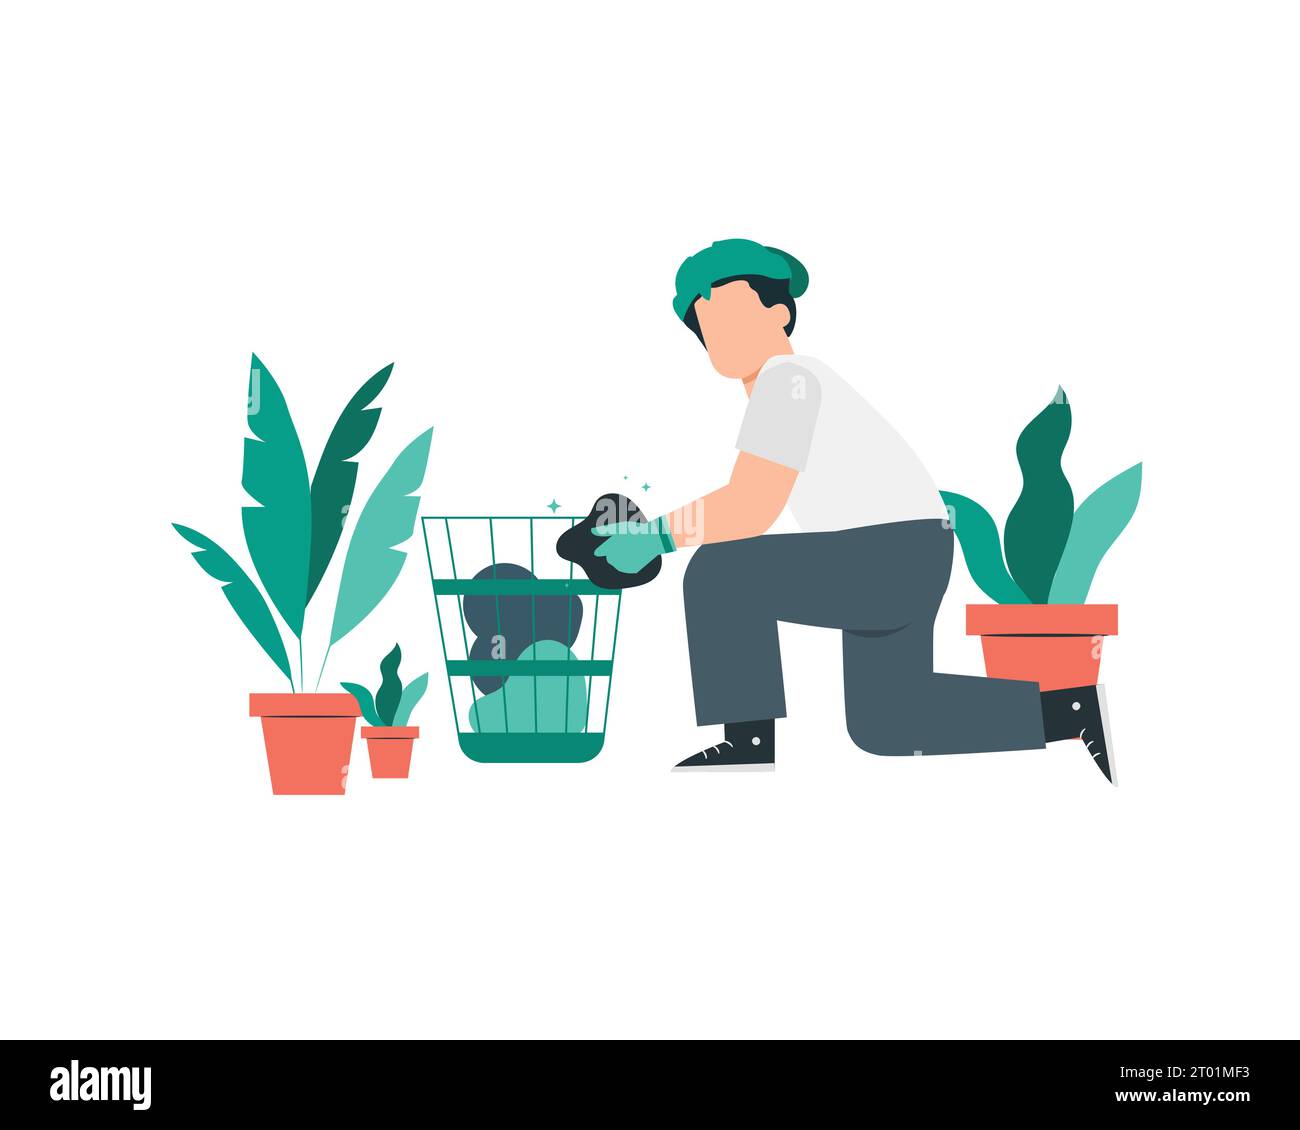 Jardinier avec des plantes en pots. Illustration vectorielle de style plat pour la conception conceptuelle de pratiques respectueuses de l'environnement et de durabilité. Illustration de Vecteur